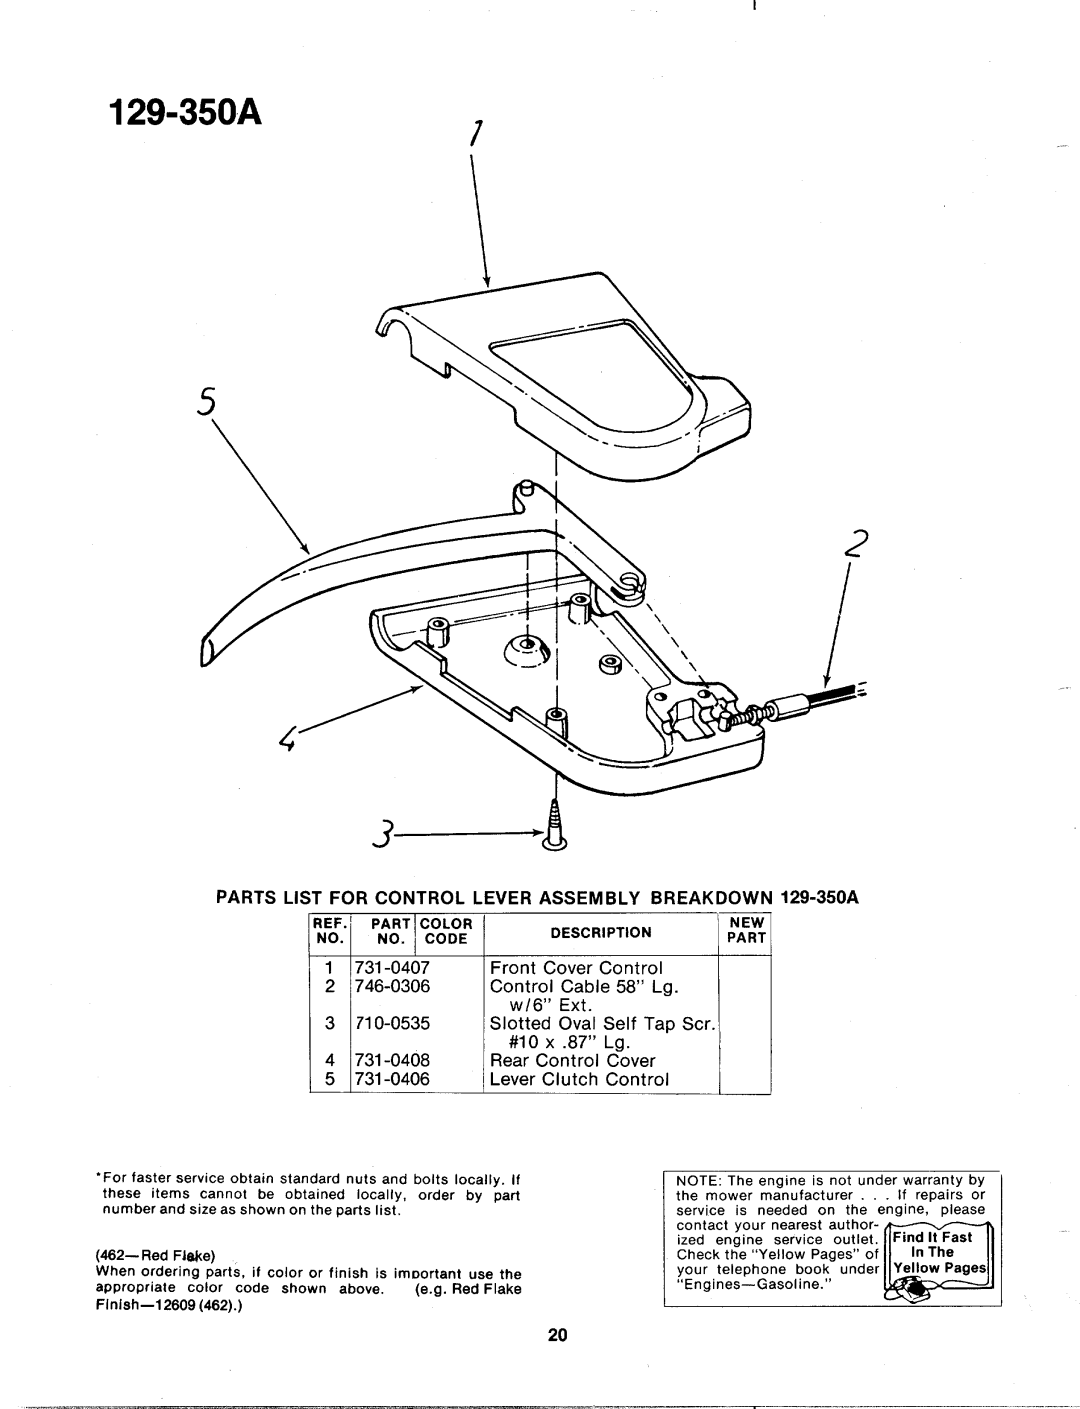 MTD 129-350A manual 